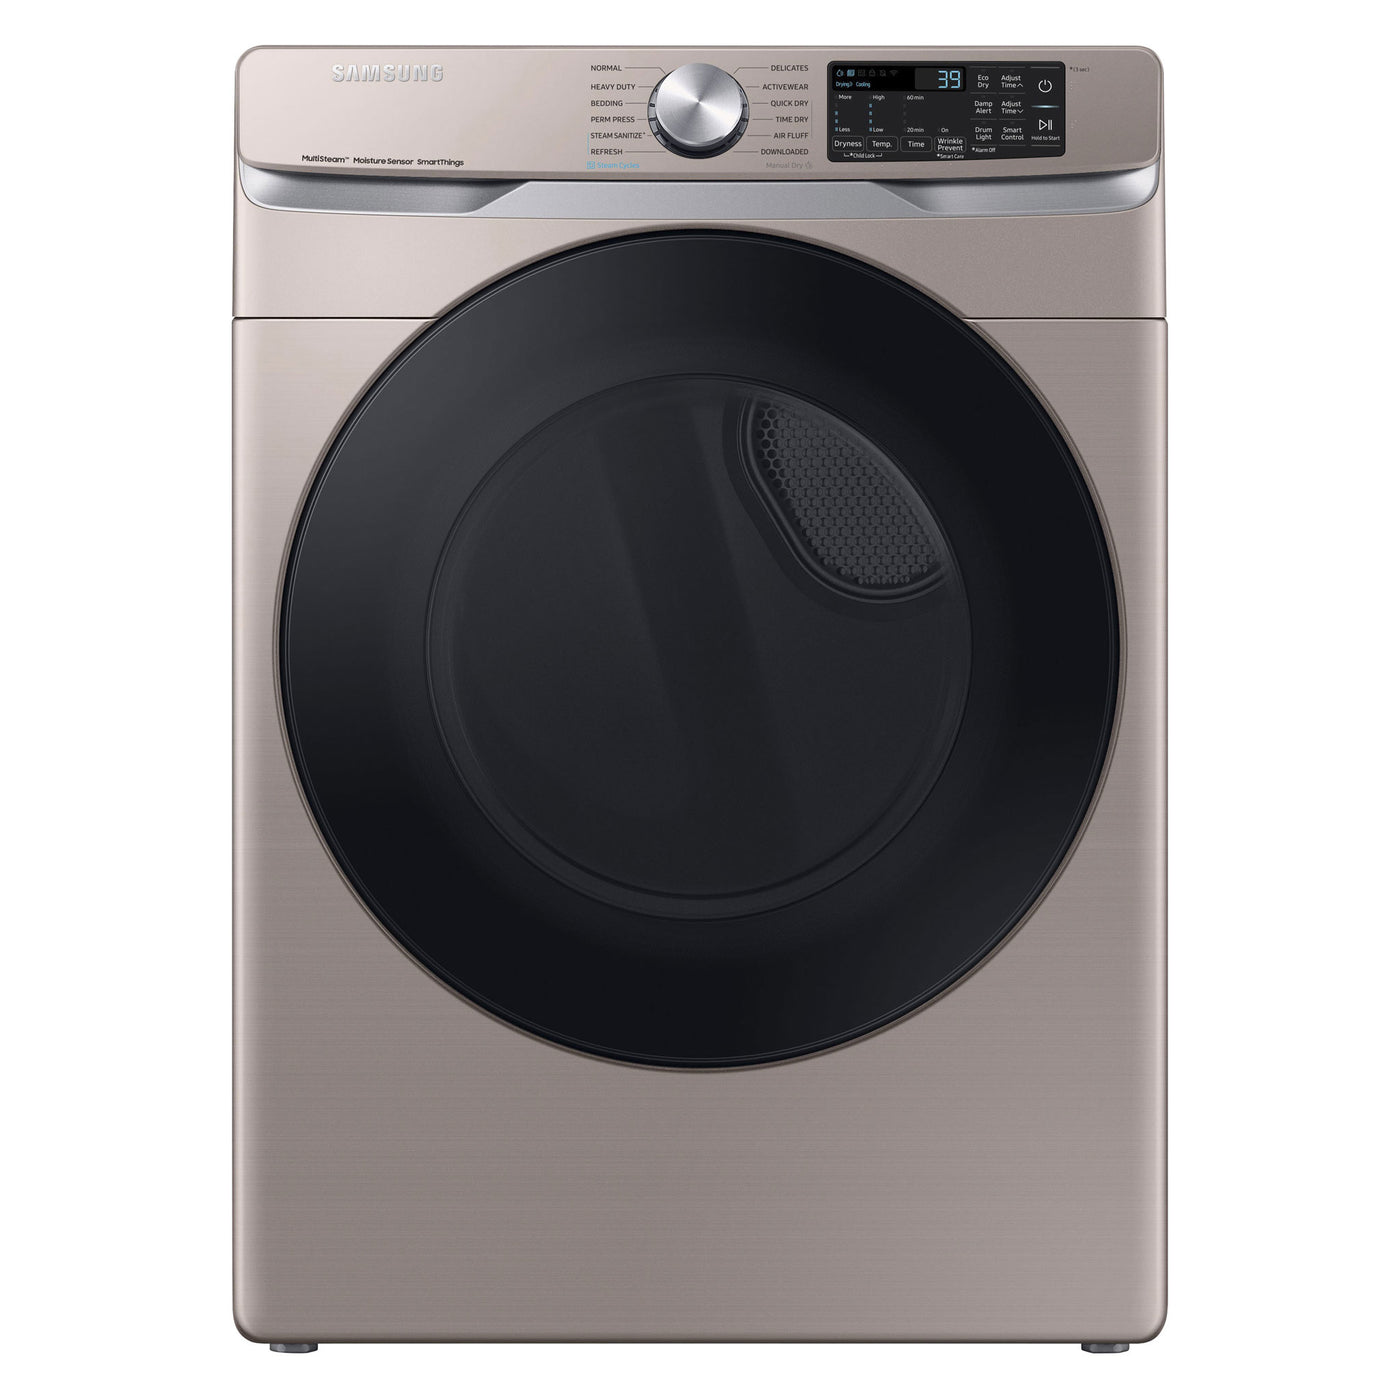 Samsung-Dryer-DVE45B6300C